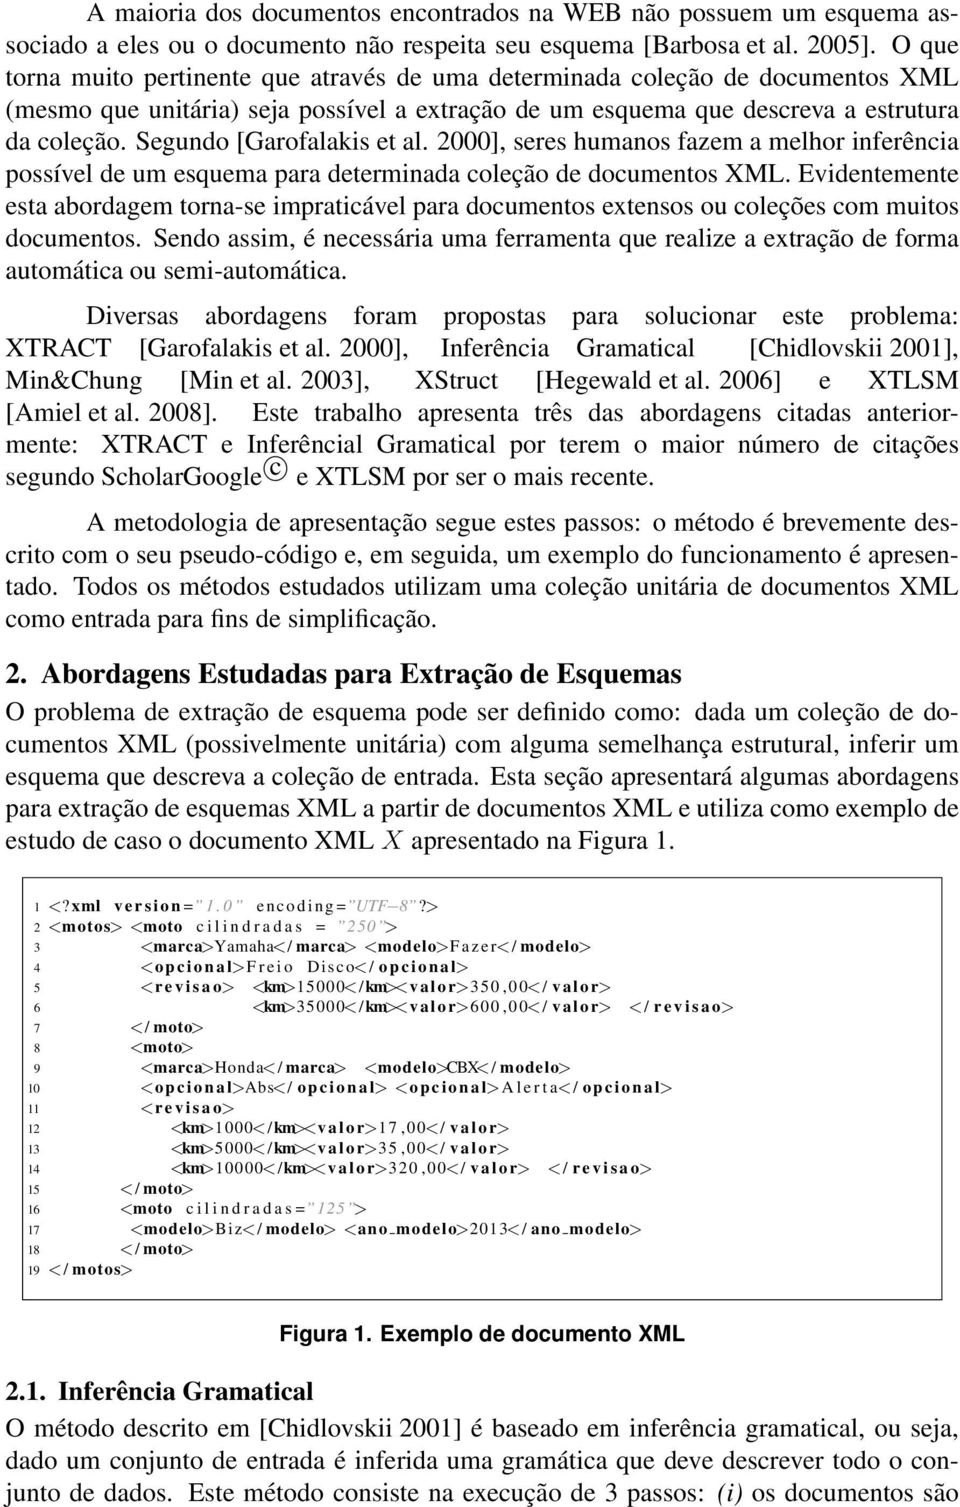 Segundo [Garofalakis et al. 2000], seres humanos fazem a melhor inferência possível de um esquema para determinada coleção de documentos XML.